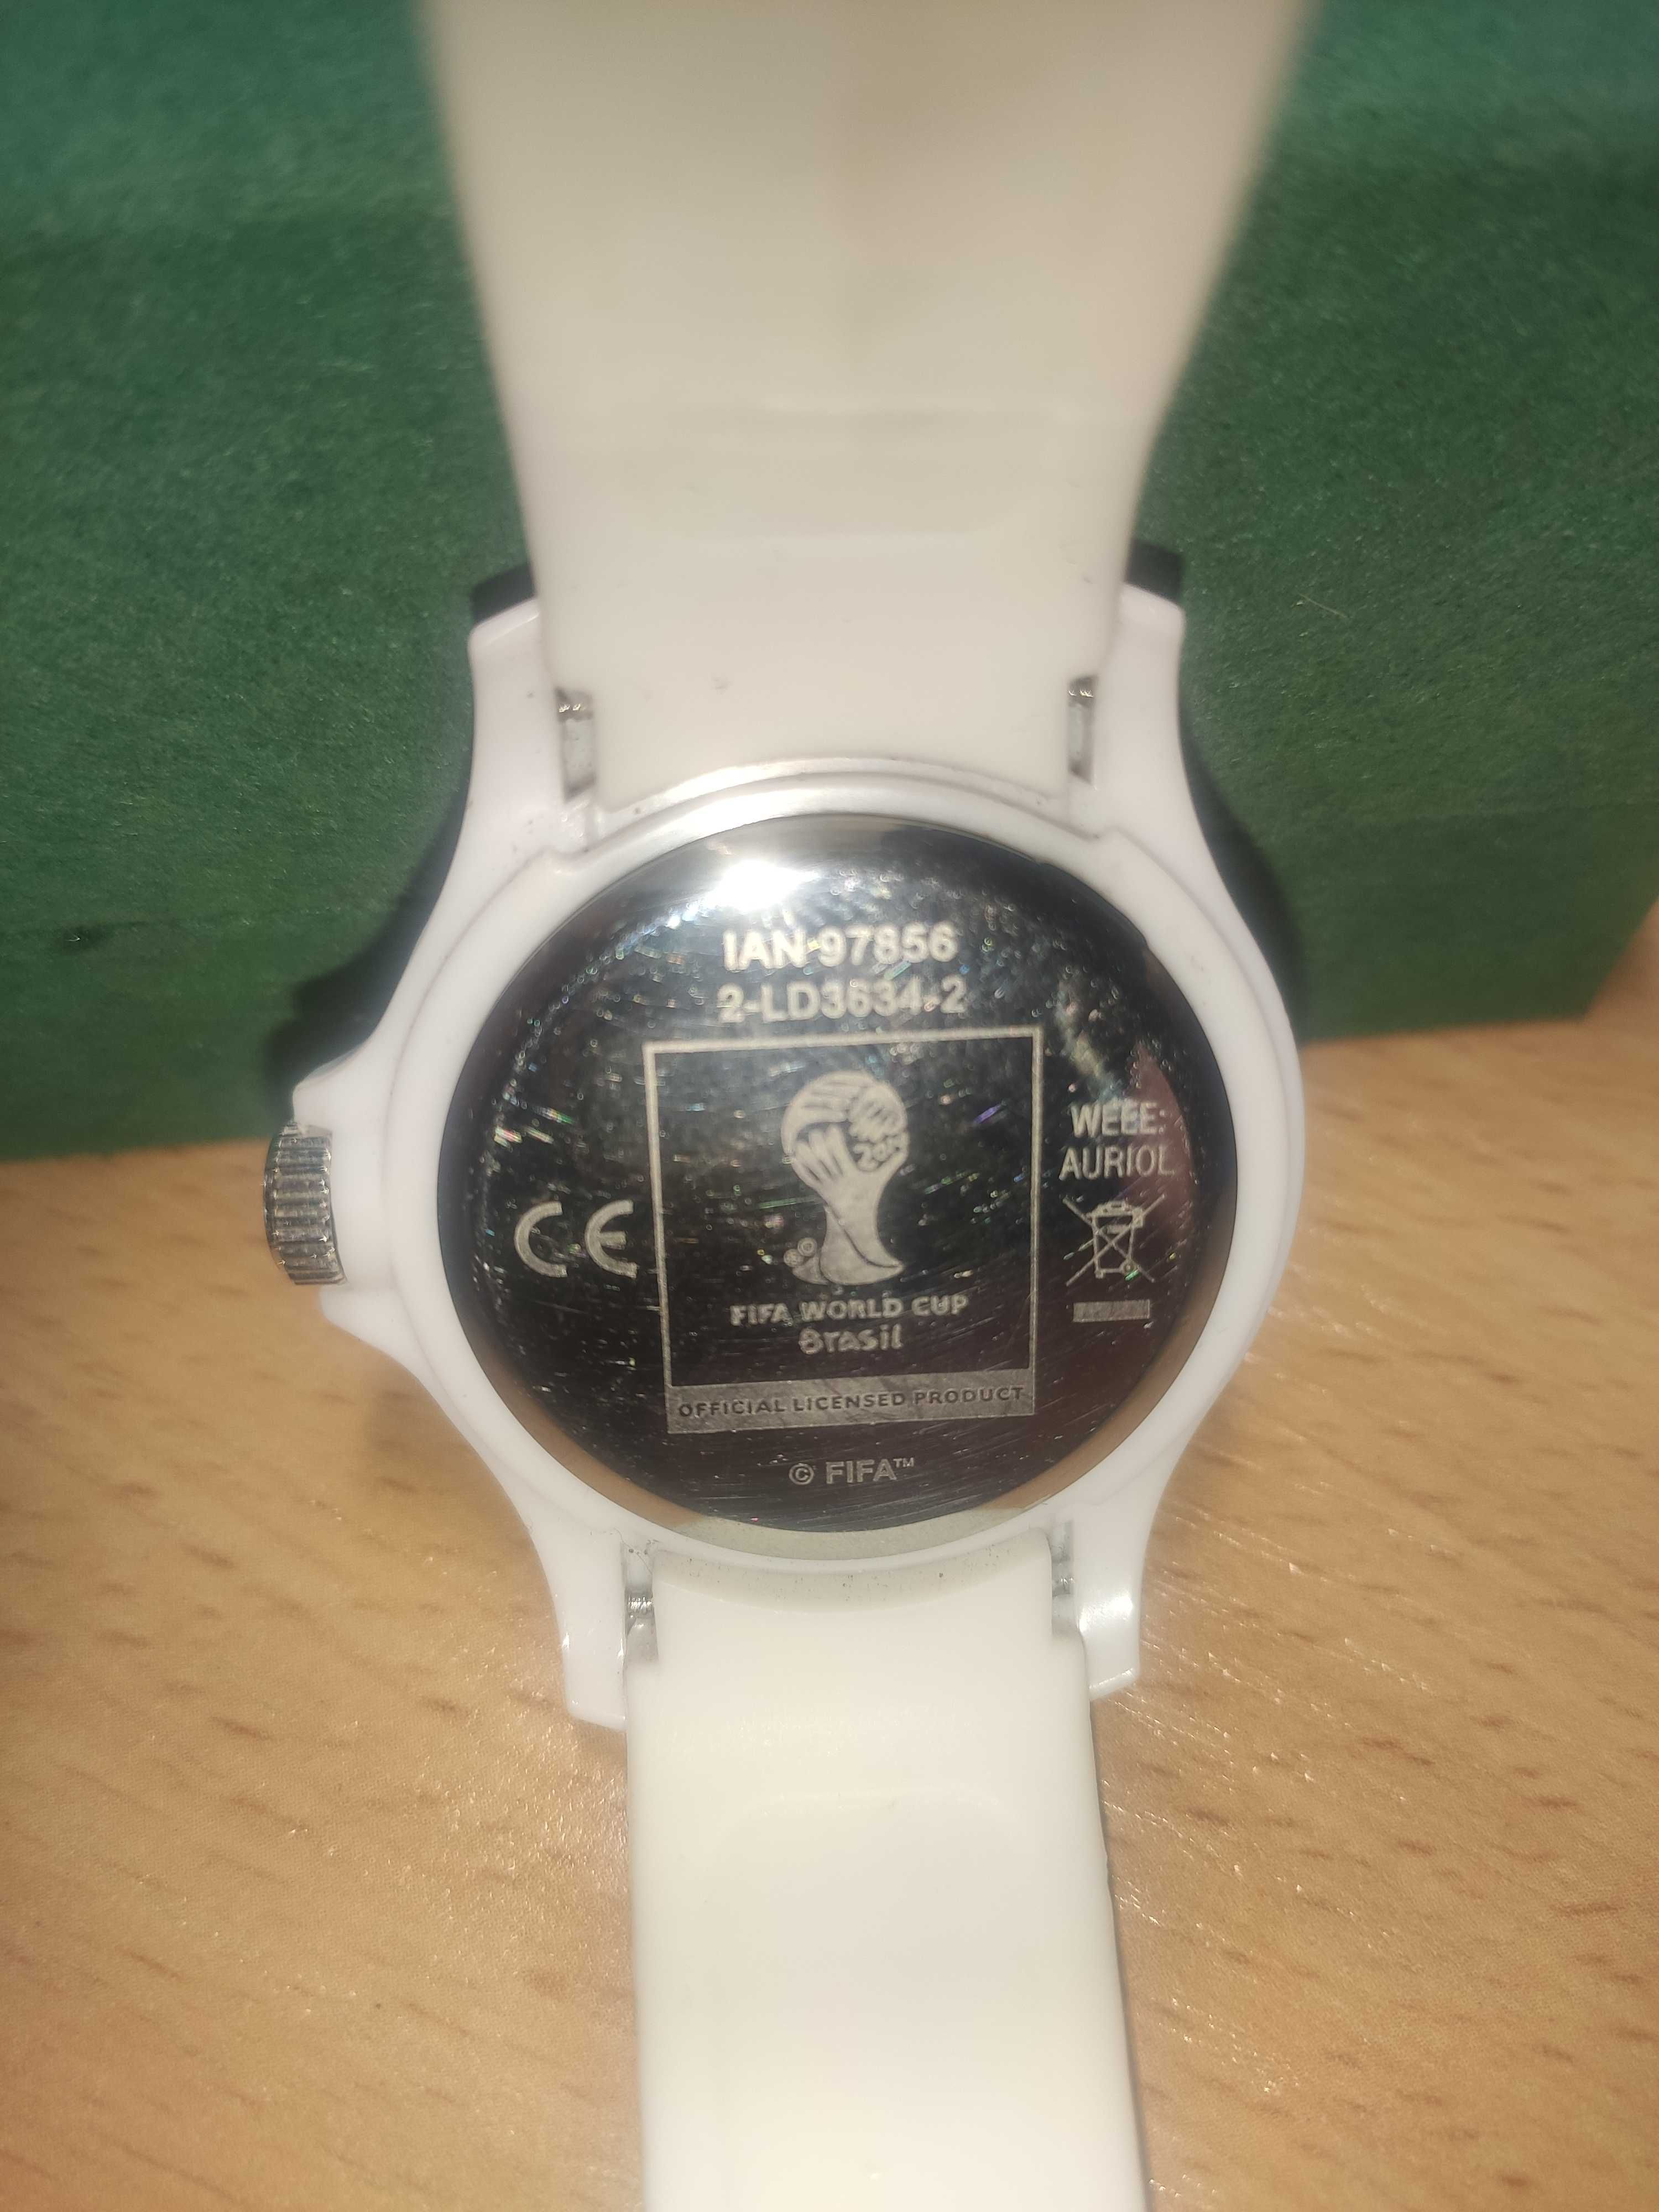 Sprzedam używany kolekcjonerski zegarek FIFA WORLD CUP BRASIL 2014.